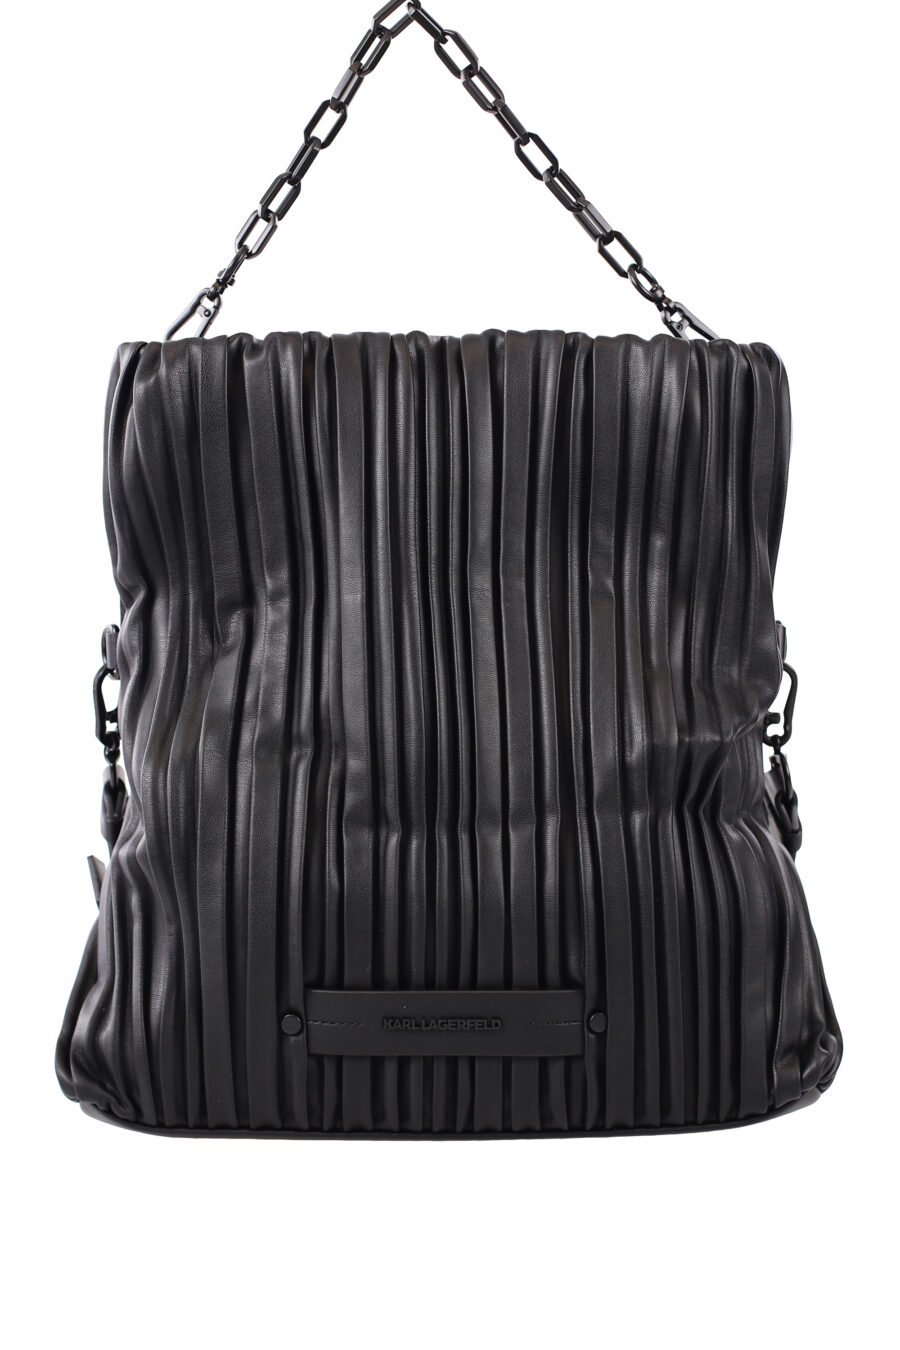 Faltbare schwarze Tasche mit einfarbigem Logo - IMG 1655